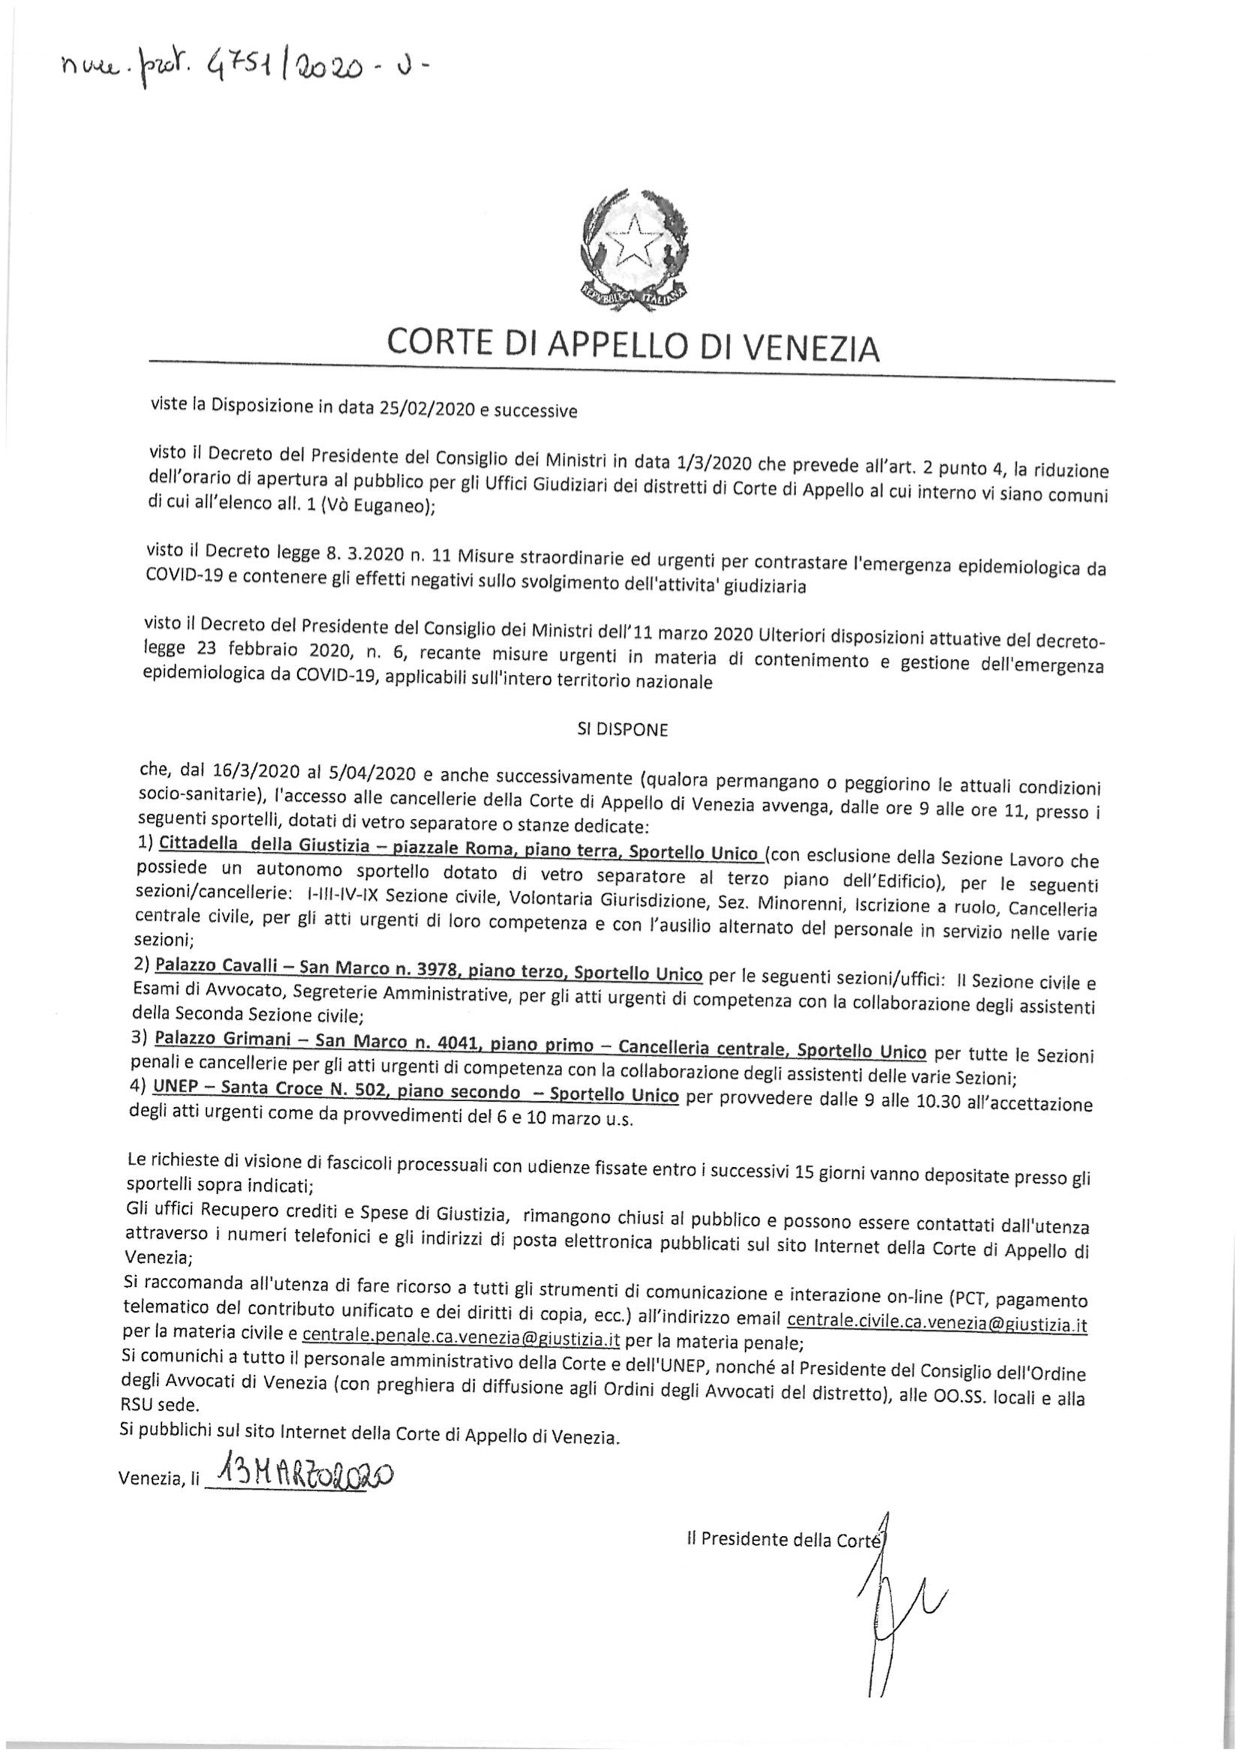 Provvedimento Presidente Corte d'Appello di Venezia 13.03.2020 in tema di accesso alle Cancellerie